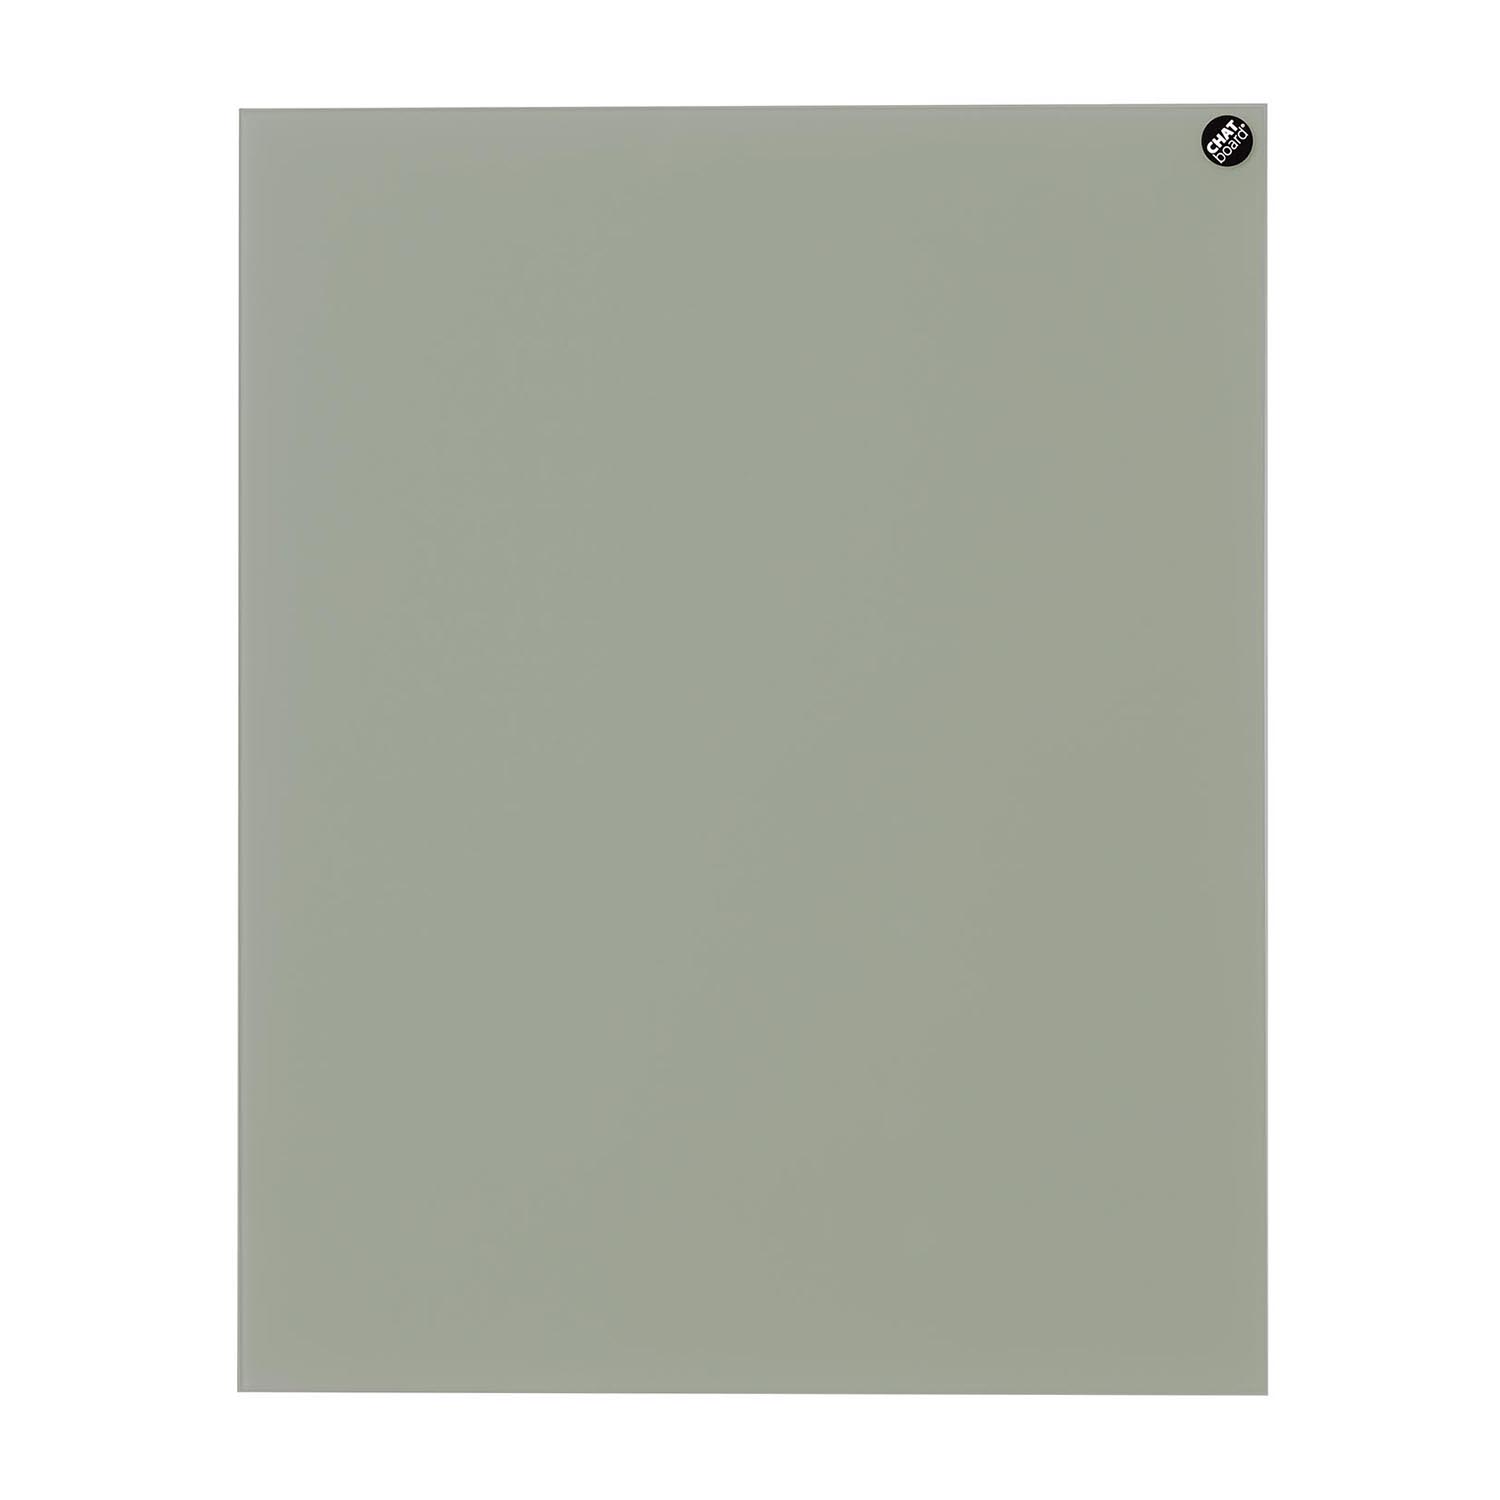 Elements Magnettafel, Grösse 120 x 90 cm, Ausrichtung horizontal, Glas pure white 14 mtpw von Chat Board